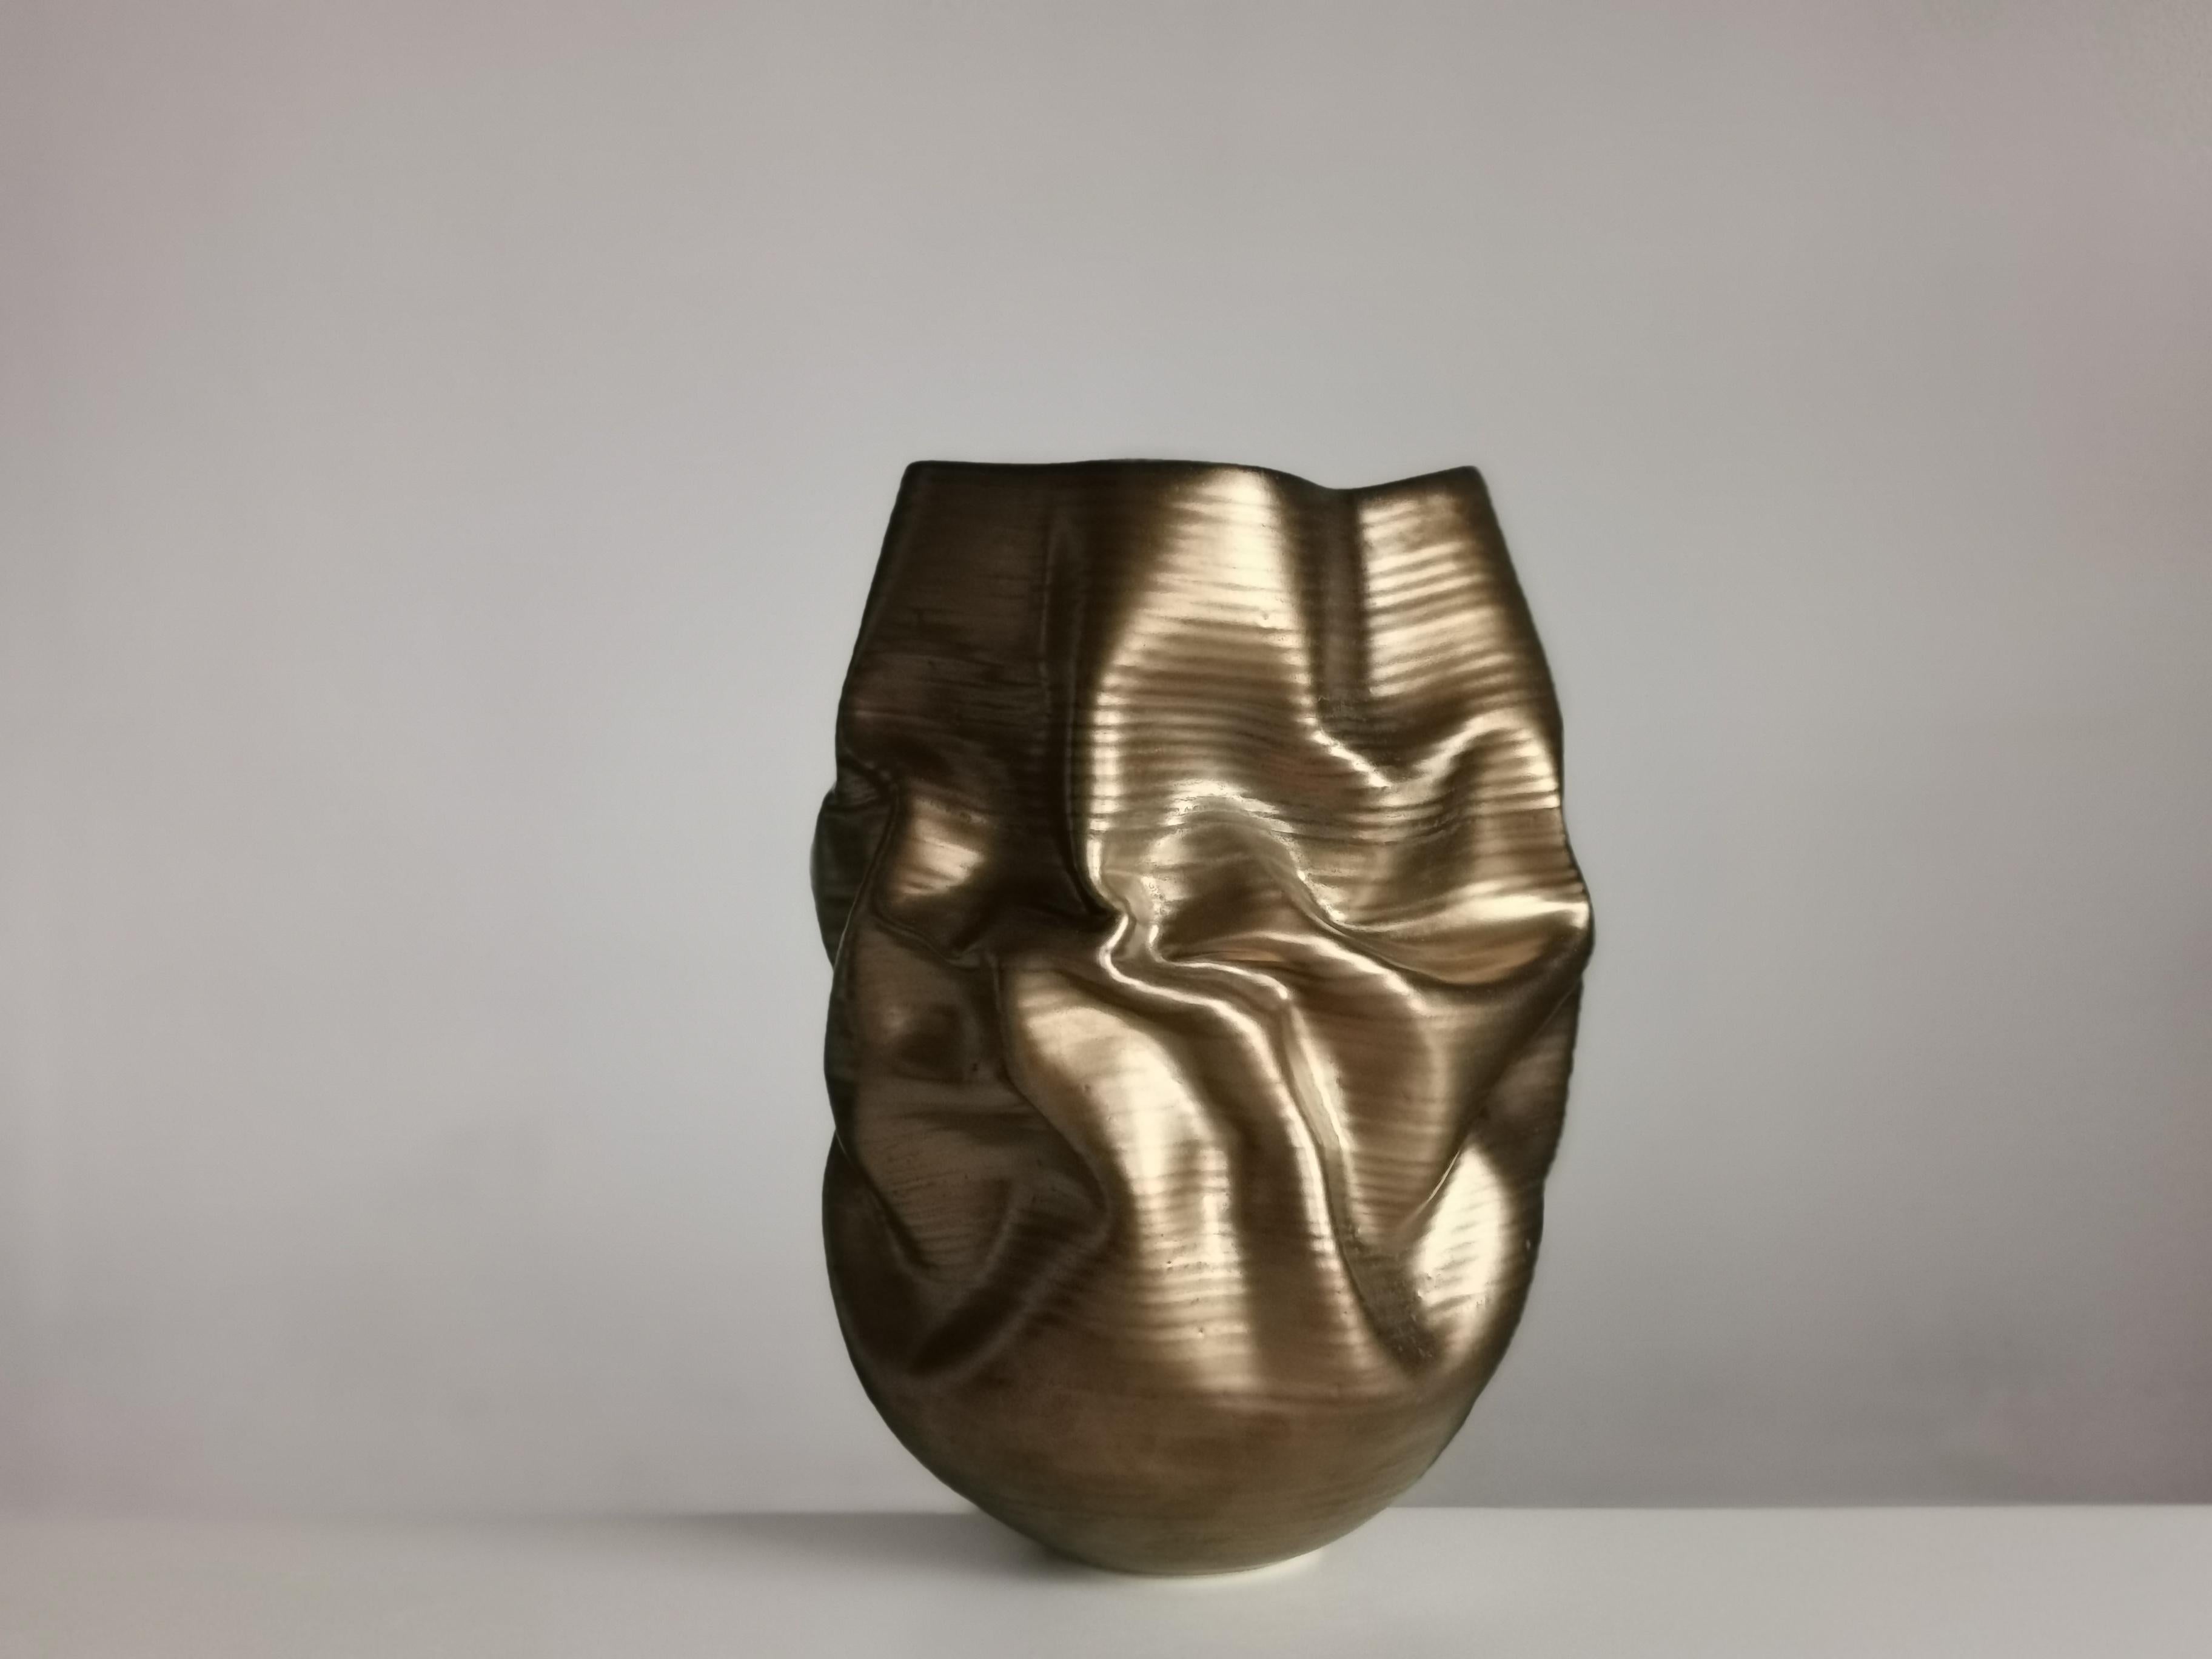 Organic Modern Gold Crumpled Form, Unique Ceramic Sculpture Vessel N.76